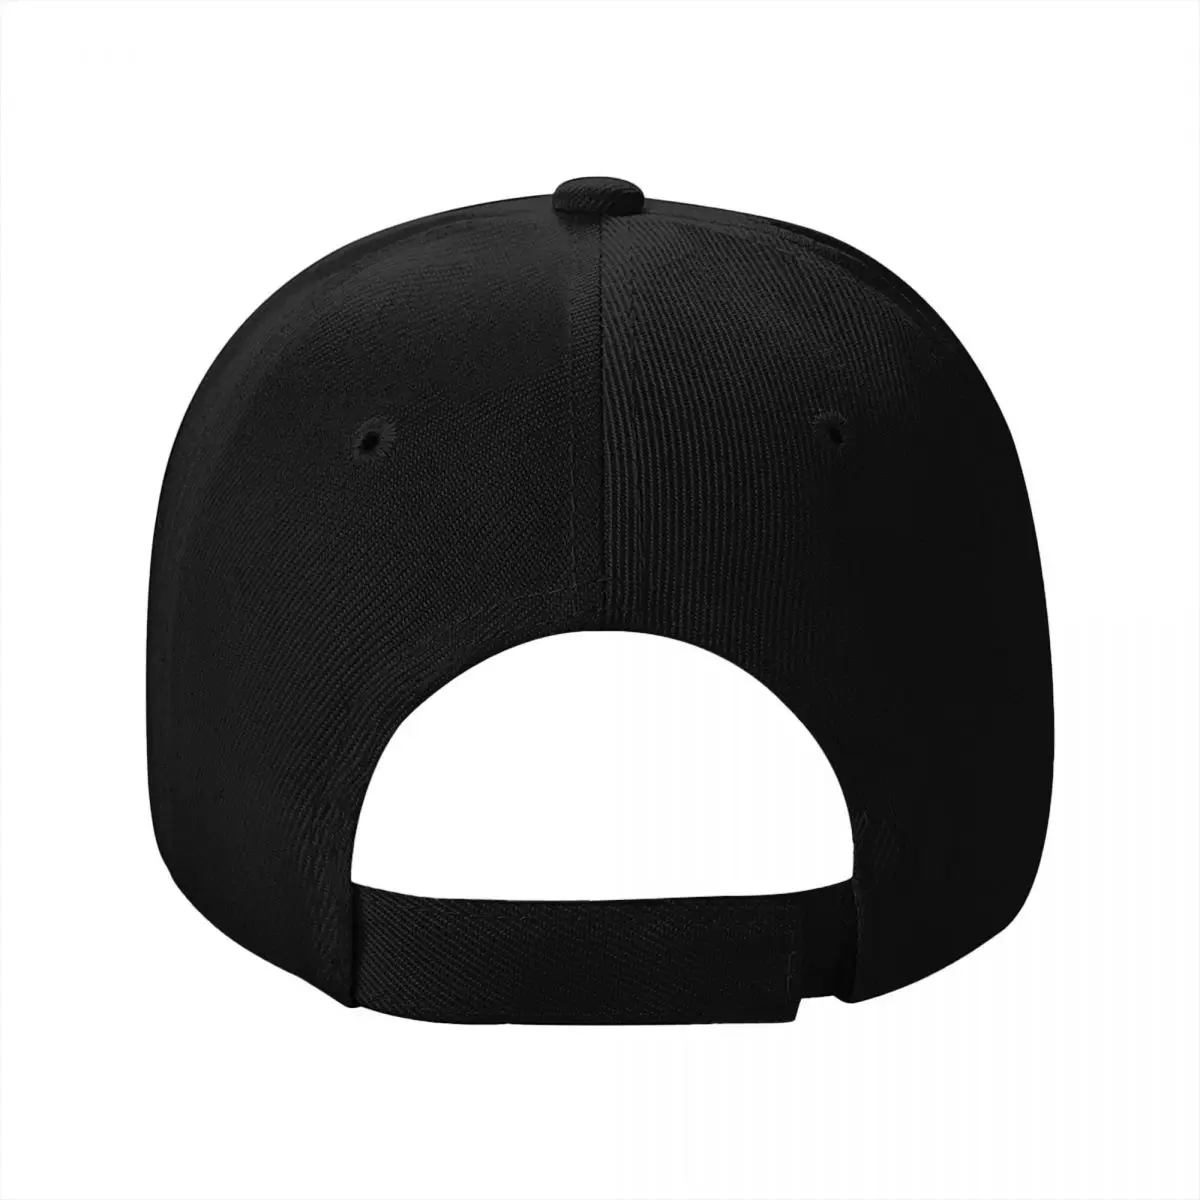 Новая бейсбольная кепка с флагом Гондураса, бейсболка, роскошная кепка, шляпы для девочек в стиле хип-хоп, мужские кепки